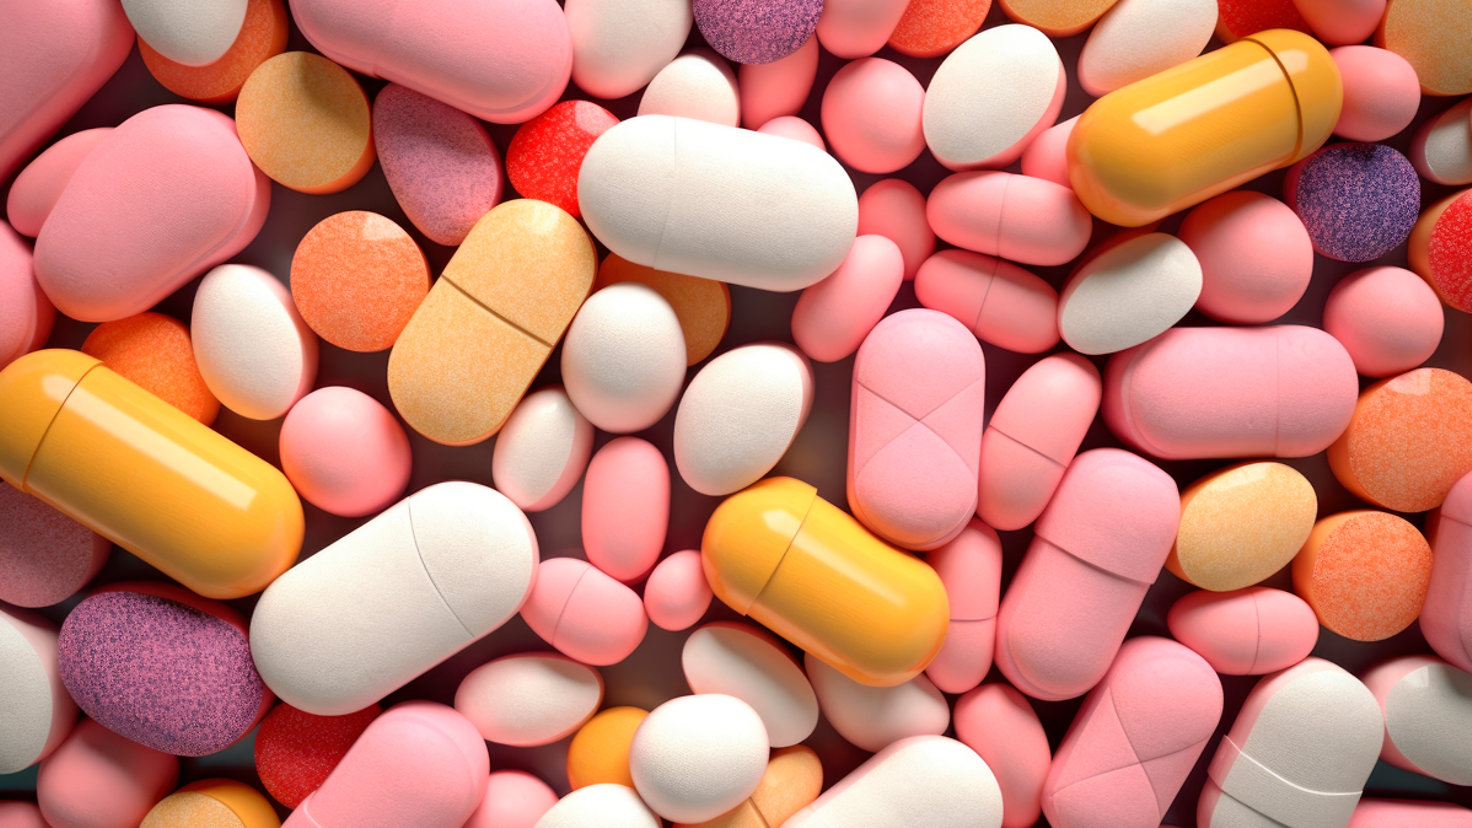 Zu sehen sind viele Tabletten unterschiedlicher Farbe und Beschaffenheit